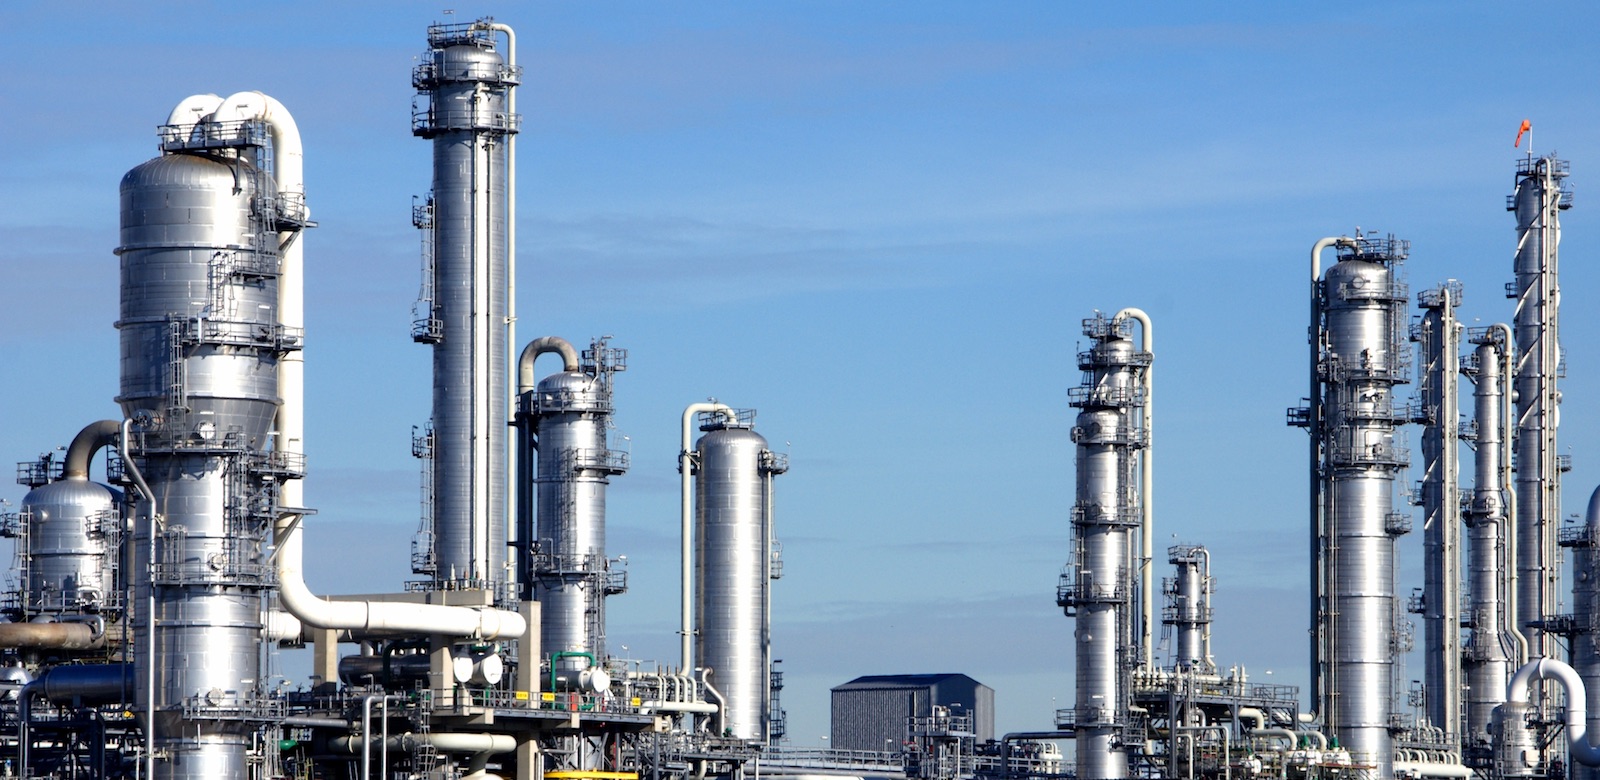 Petrochemie plant waar POWARE Industrial Automation engineers dagelijks werkzaamheden verrichten aan PLC SCADA een DCS systemen.